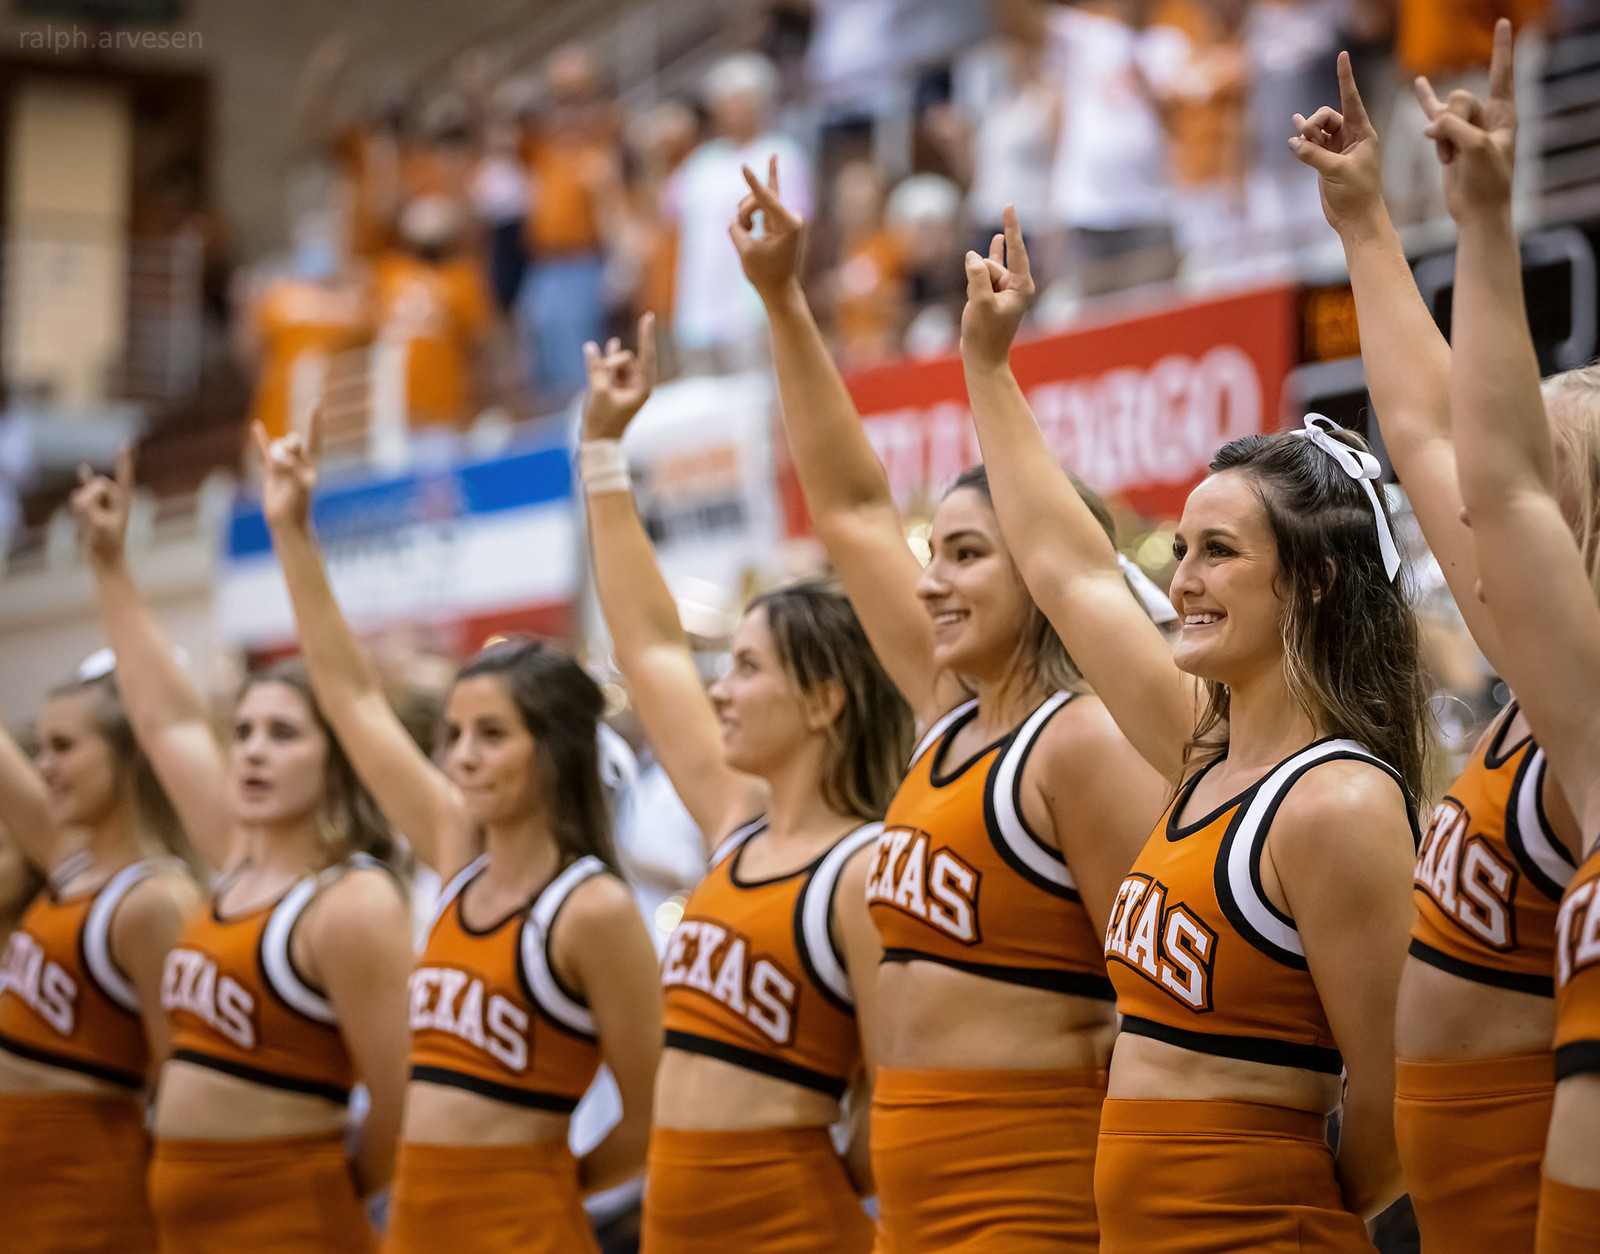 Texas Volleyball | Texas Review | Ralph Arvesen